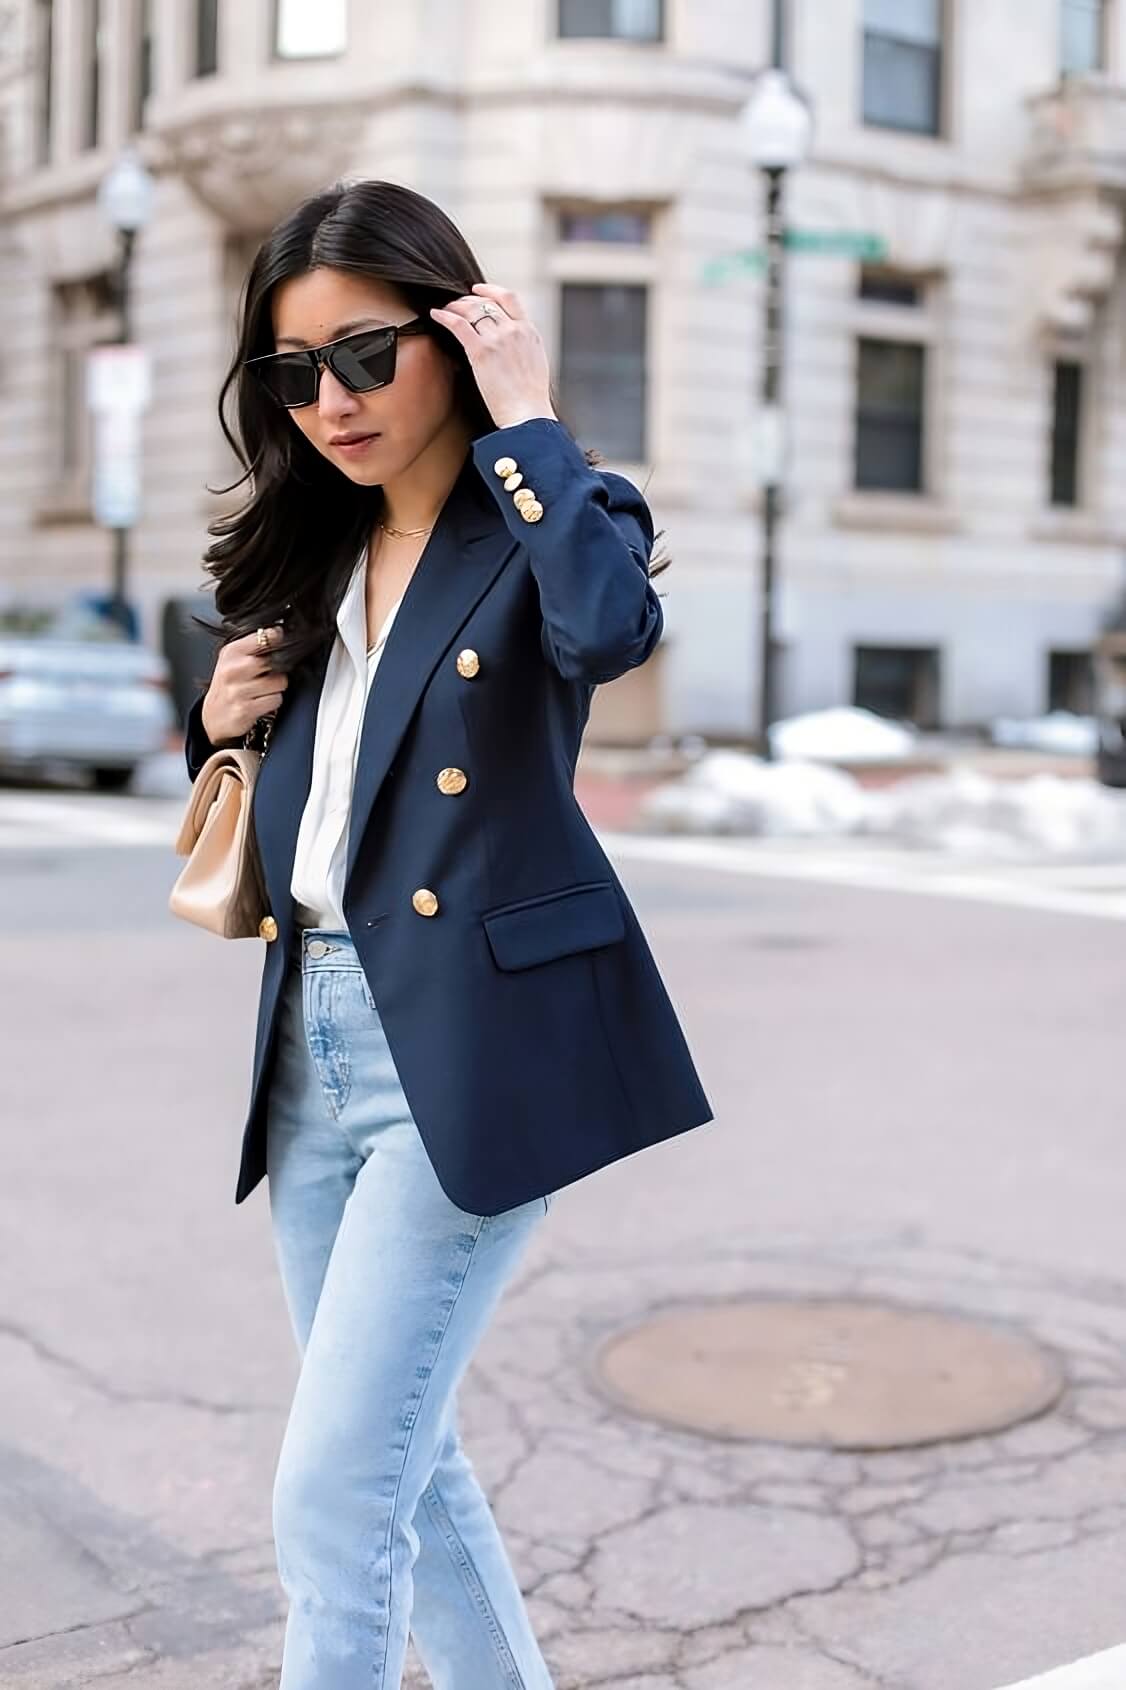 6 Effortless Ways To Wear Your Blazer Like A Magazine Model - 169